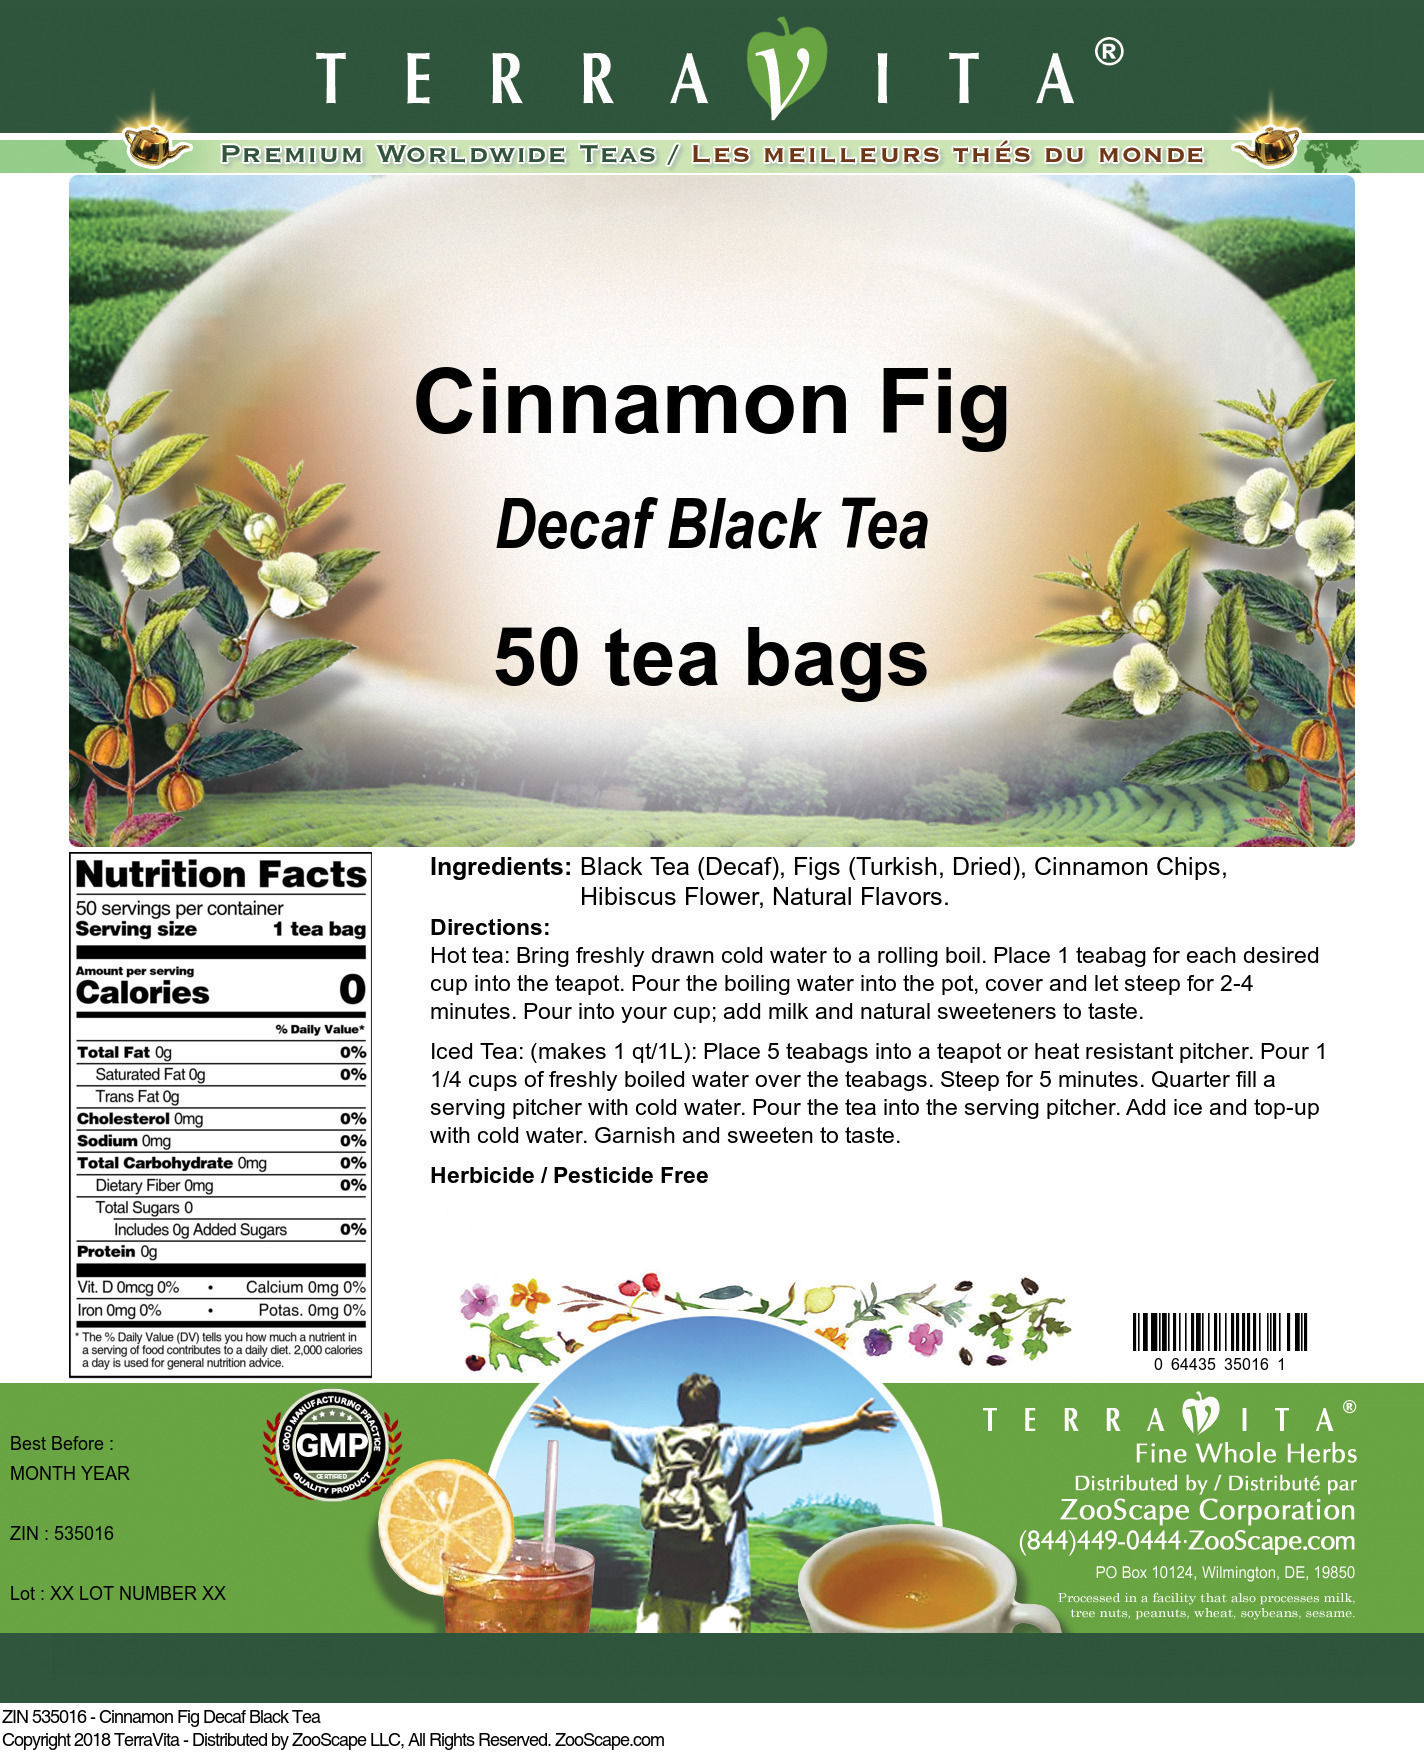 Cinnamon Fig Decaf Black Tea - Label